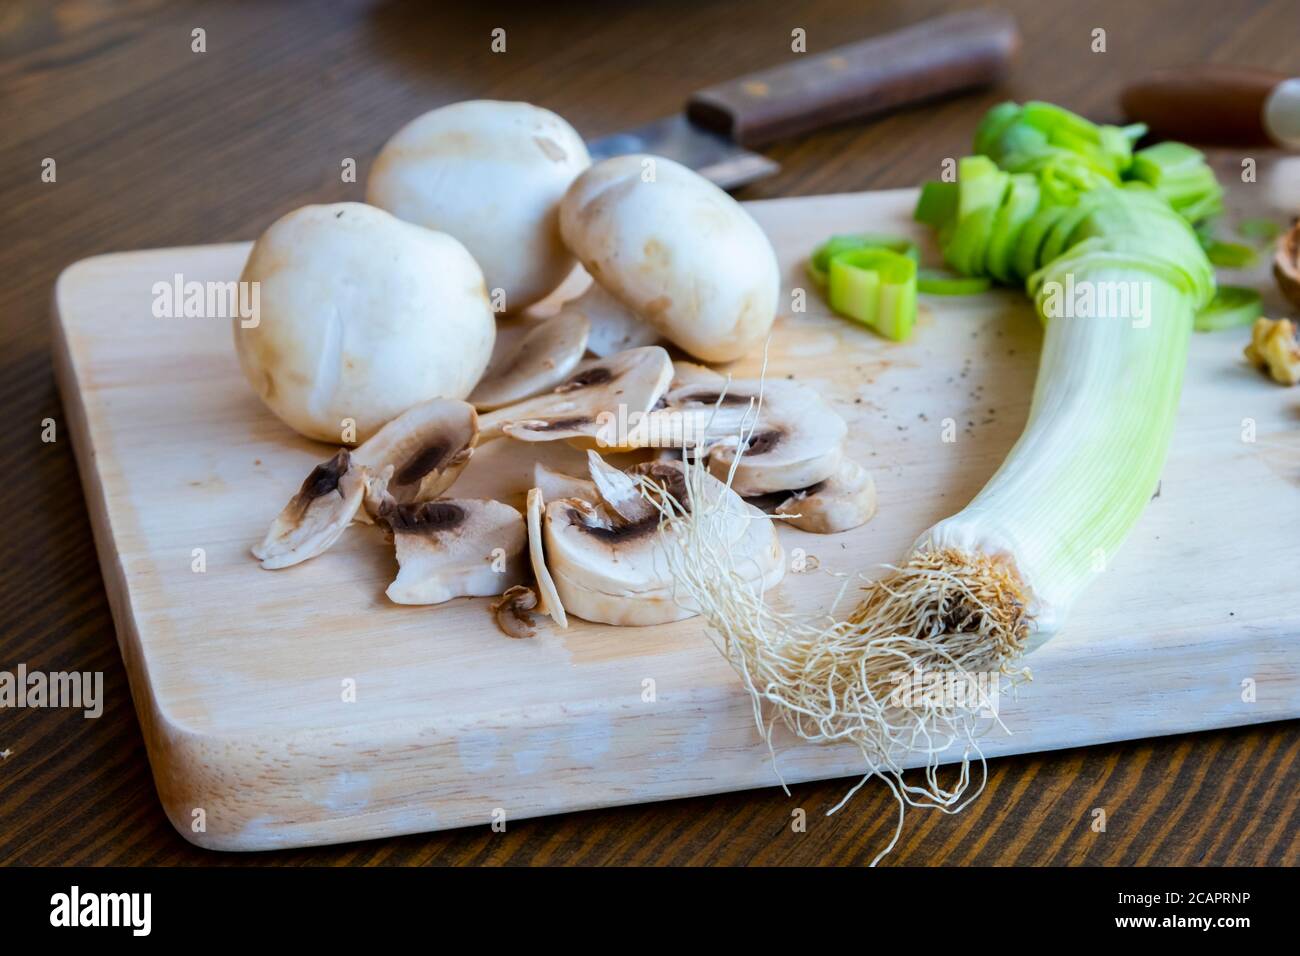 Mesa con productos dietéticos vegetarianos incluyendo nueces, hongos y puerro Foto de stock